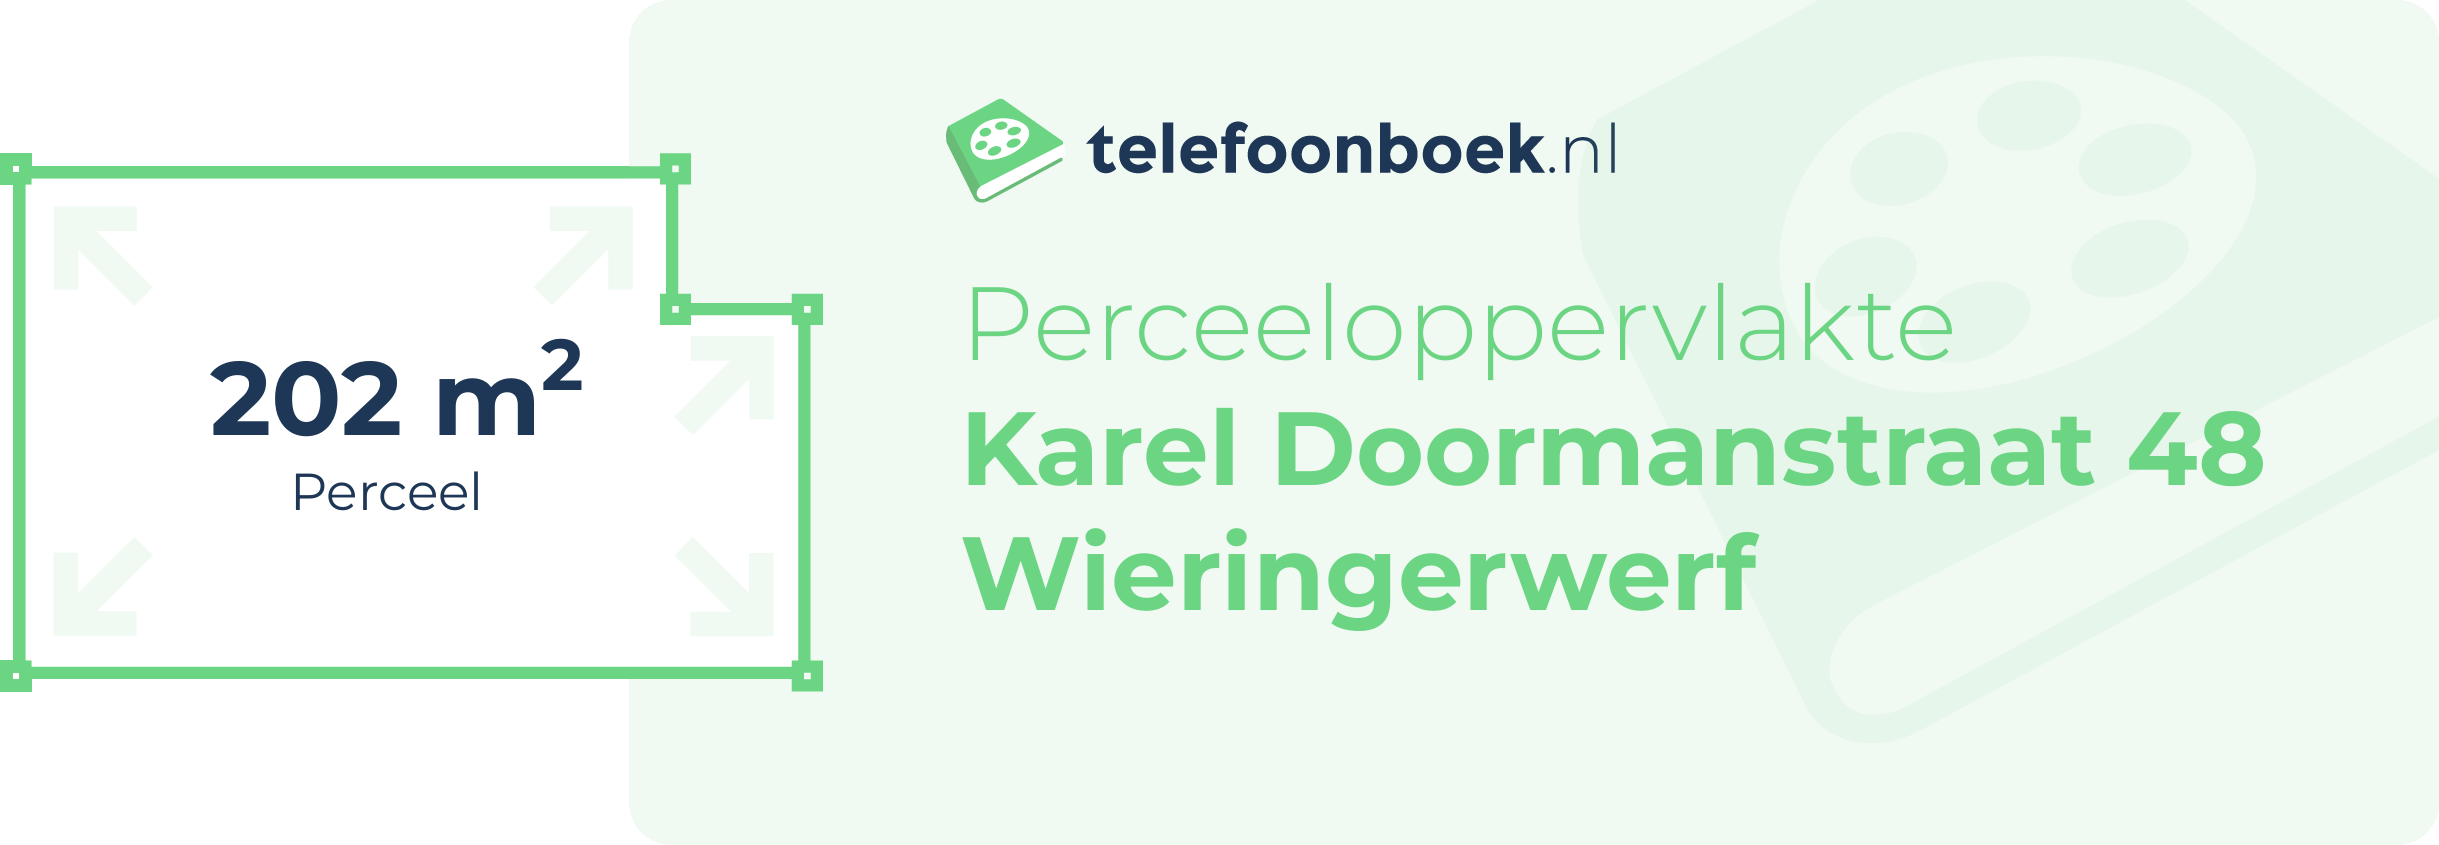 Perceeloppervlakte Karel Doormanstraat 48 Wieringerwerf